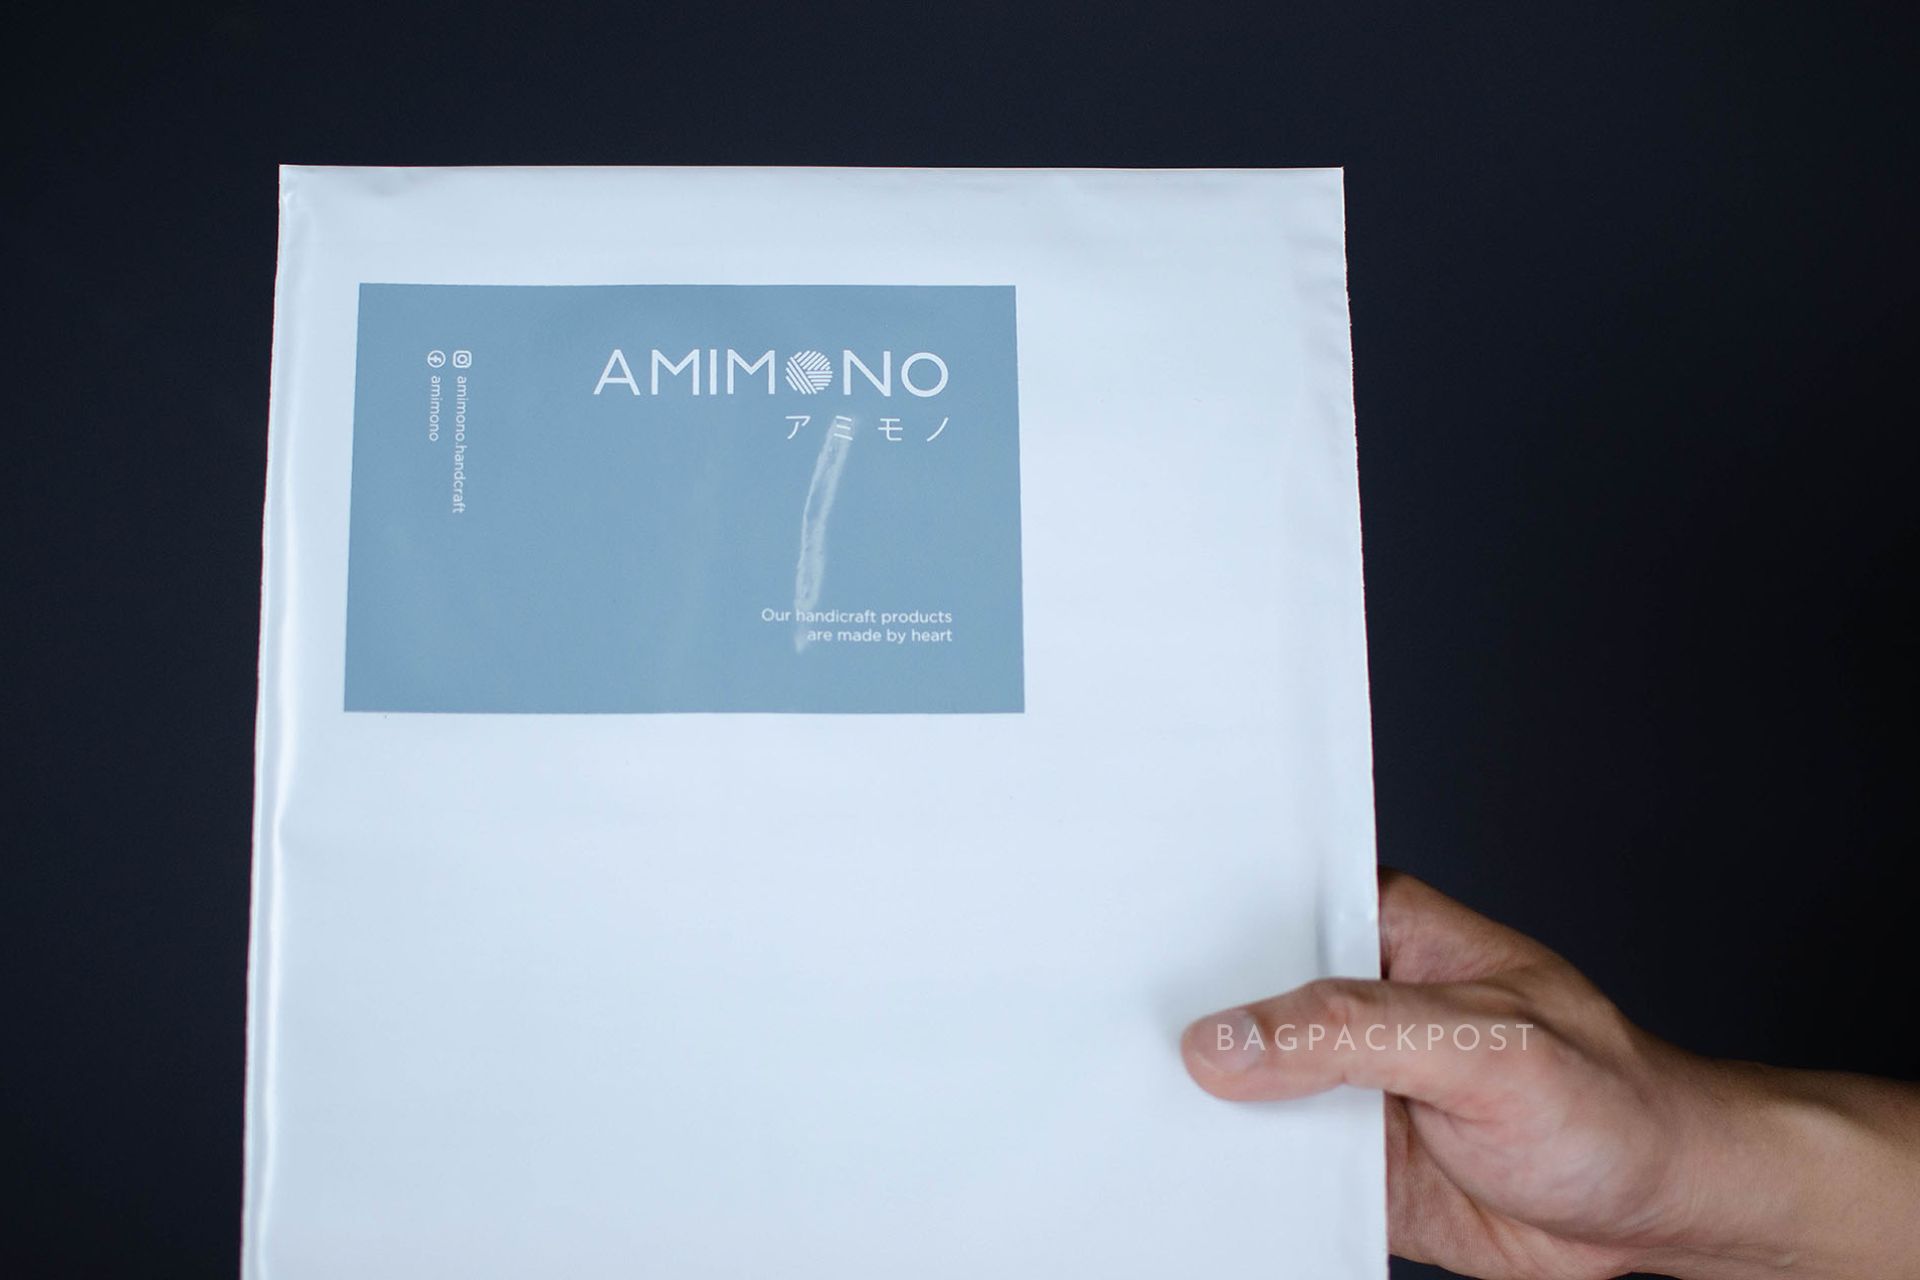 ผลิตถุงไปรษณีย์ ซองไปรษณีย์พิมพ์ลาย AMIMONO ซองไปรษณีย์สีขาว ถุงไปรษณีย์พิมพ์ลาย 1 BagPackPost